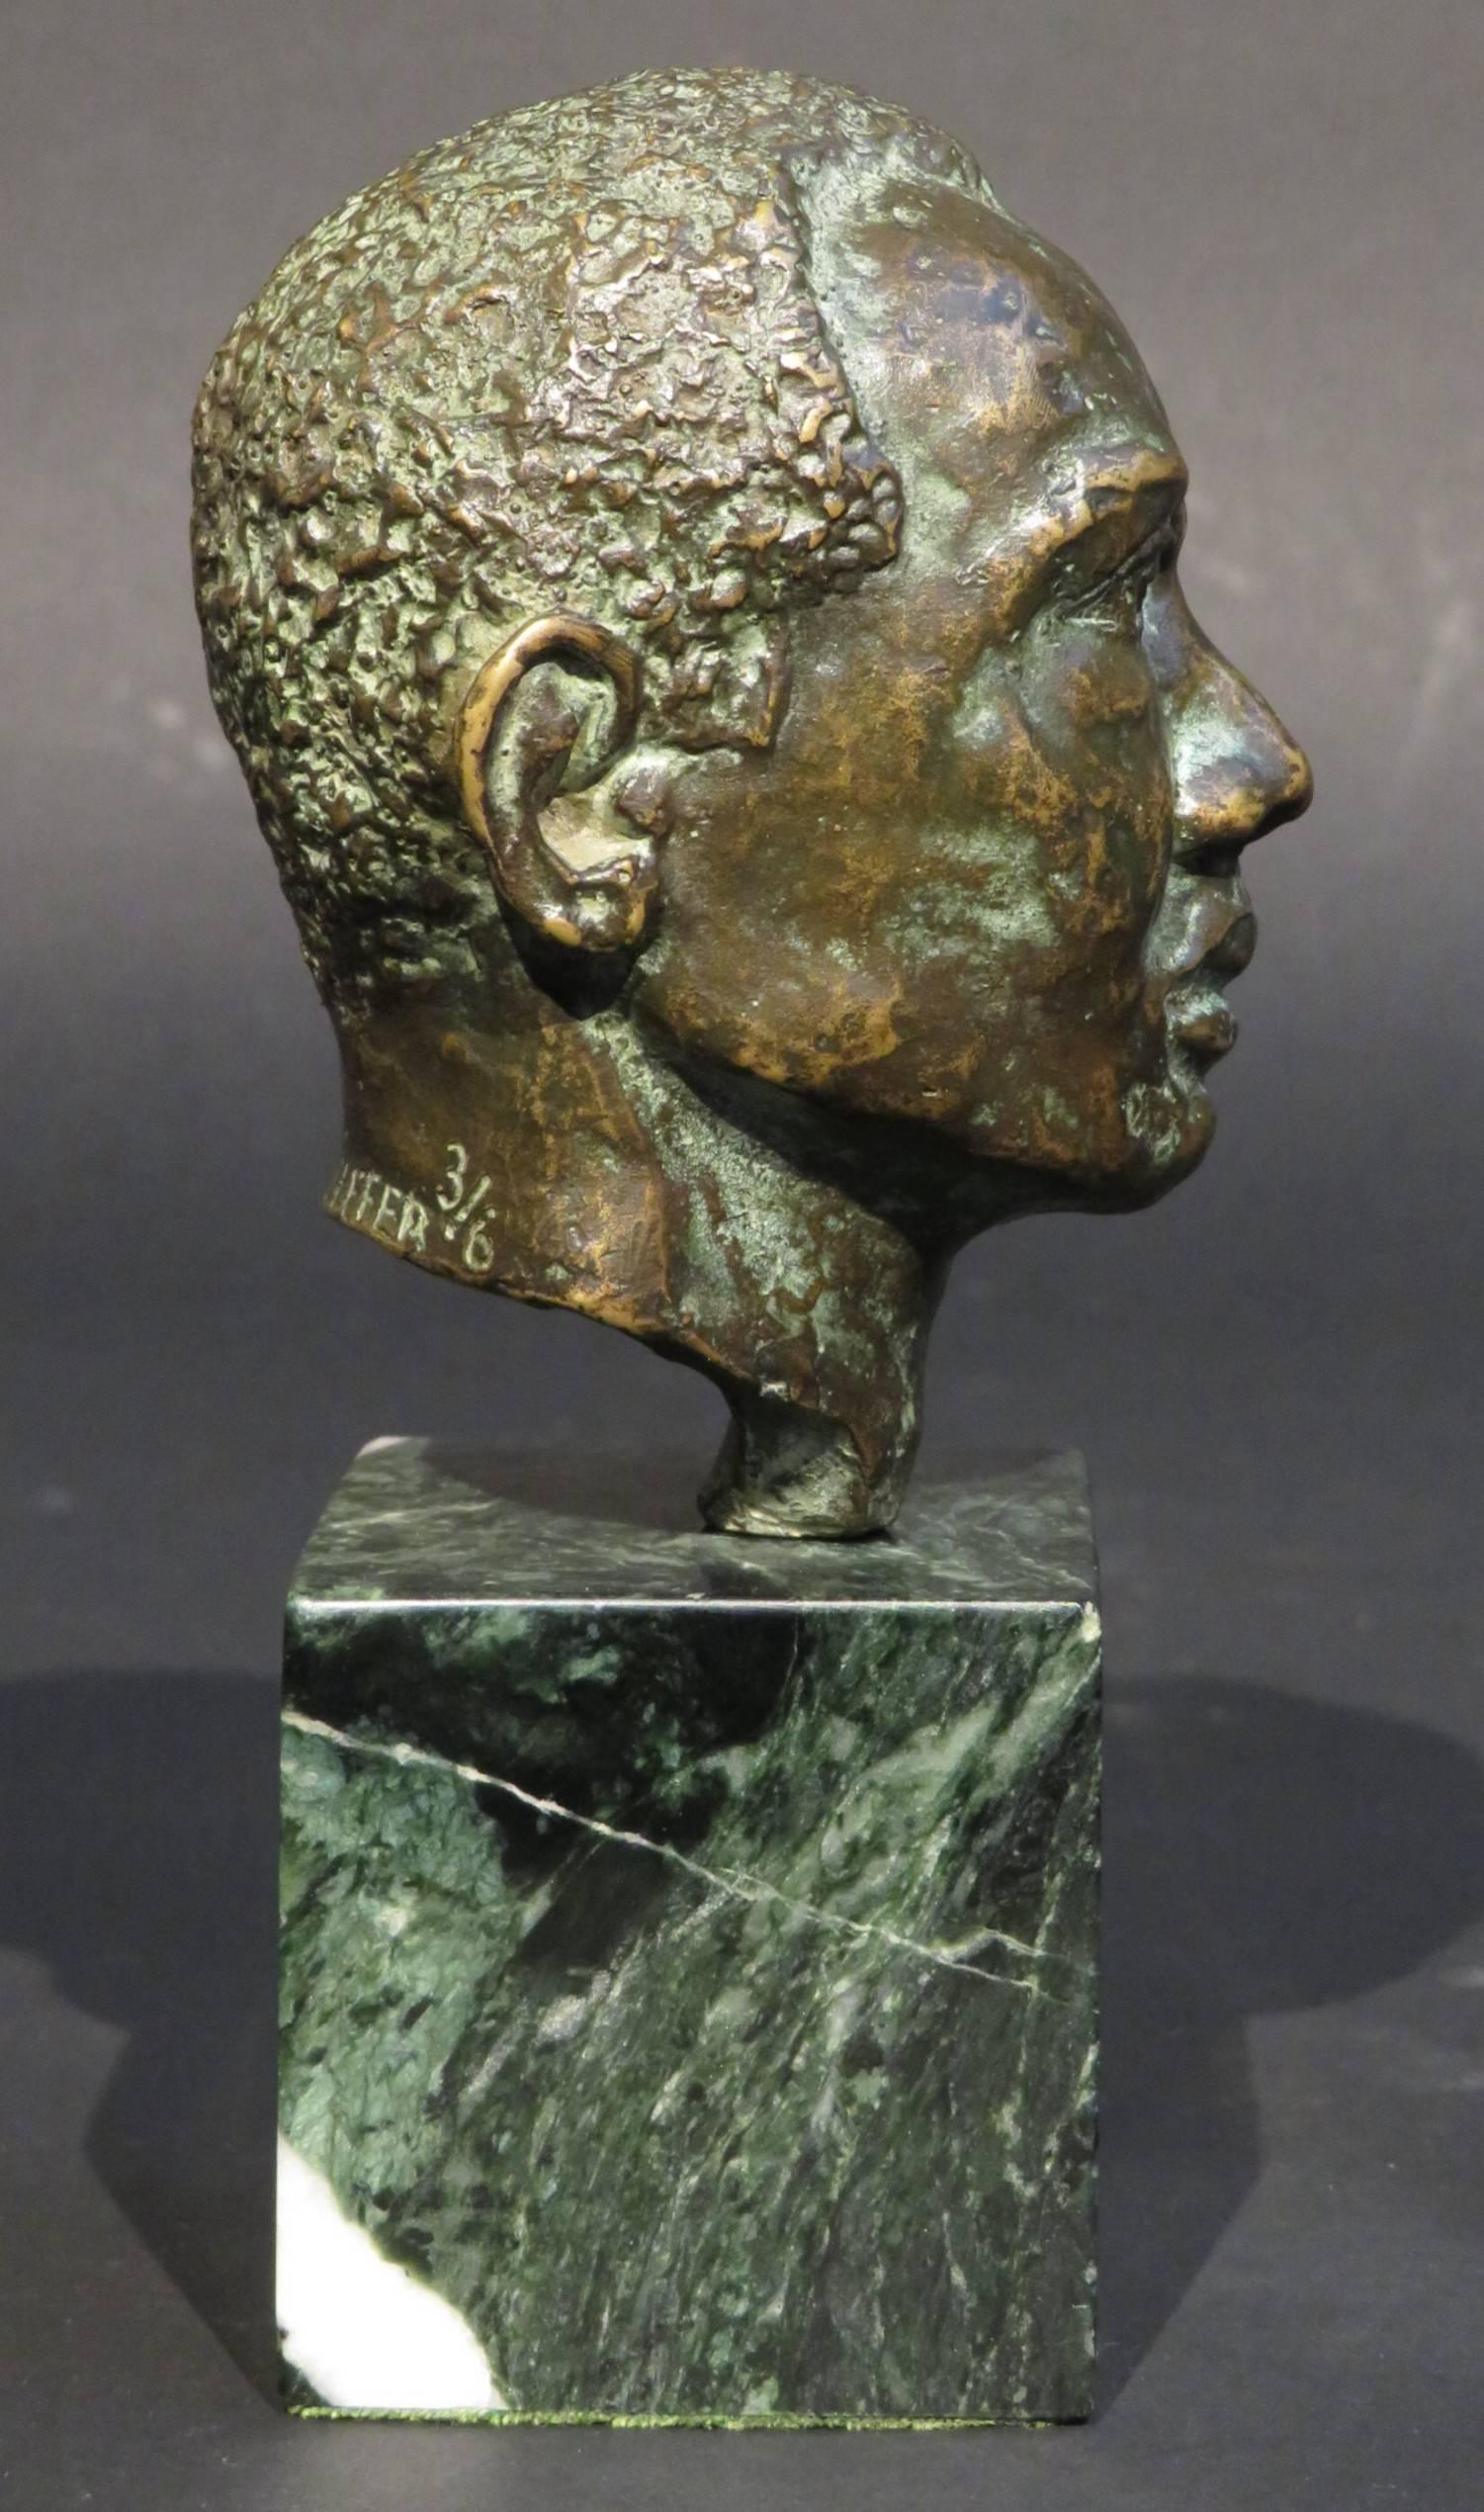 Eine fein gearbeitete Miniatur-Bronzebüste eines Mannes von den Bahamas mit einer feinen braun/grünen Patina, signiert und nummeriert auf der Rückseite H. Pfeiffer 3/6, auf einem gestreiften grünen Marmorsockel. Die Maße der Gesamthöhe sind